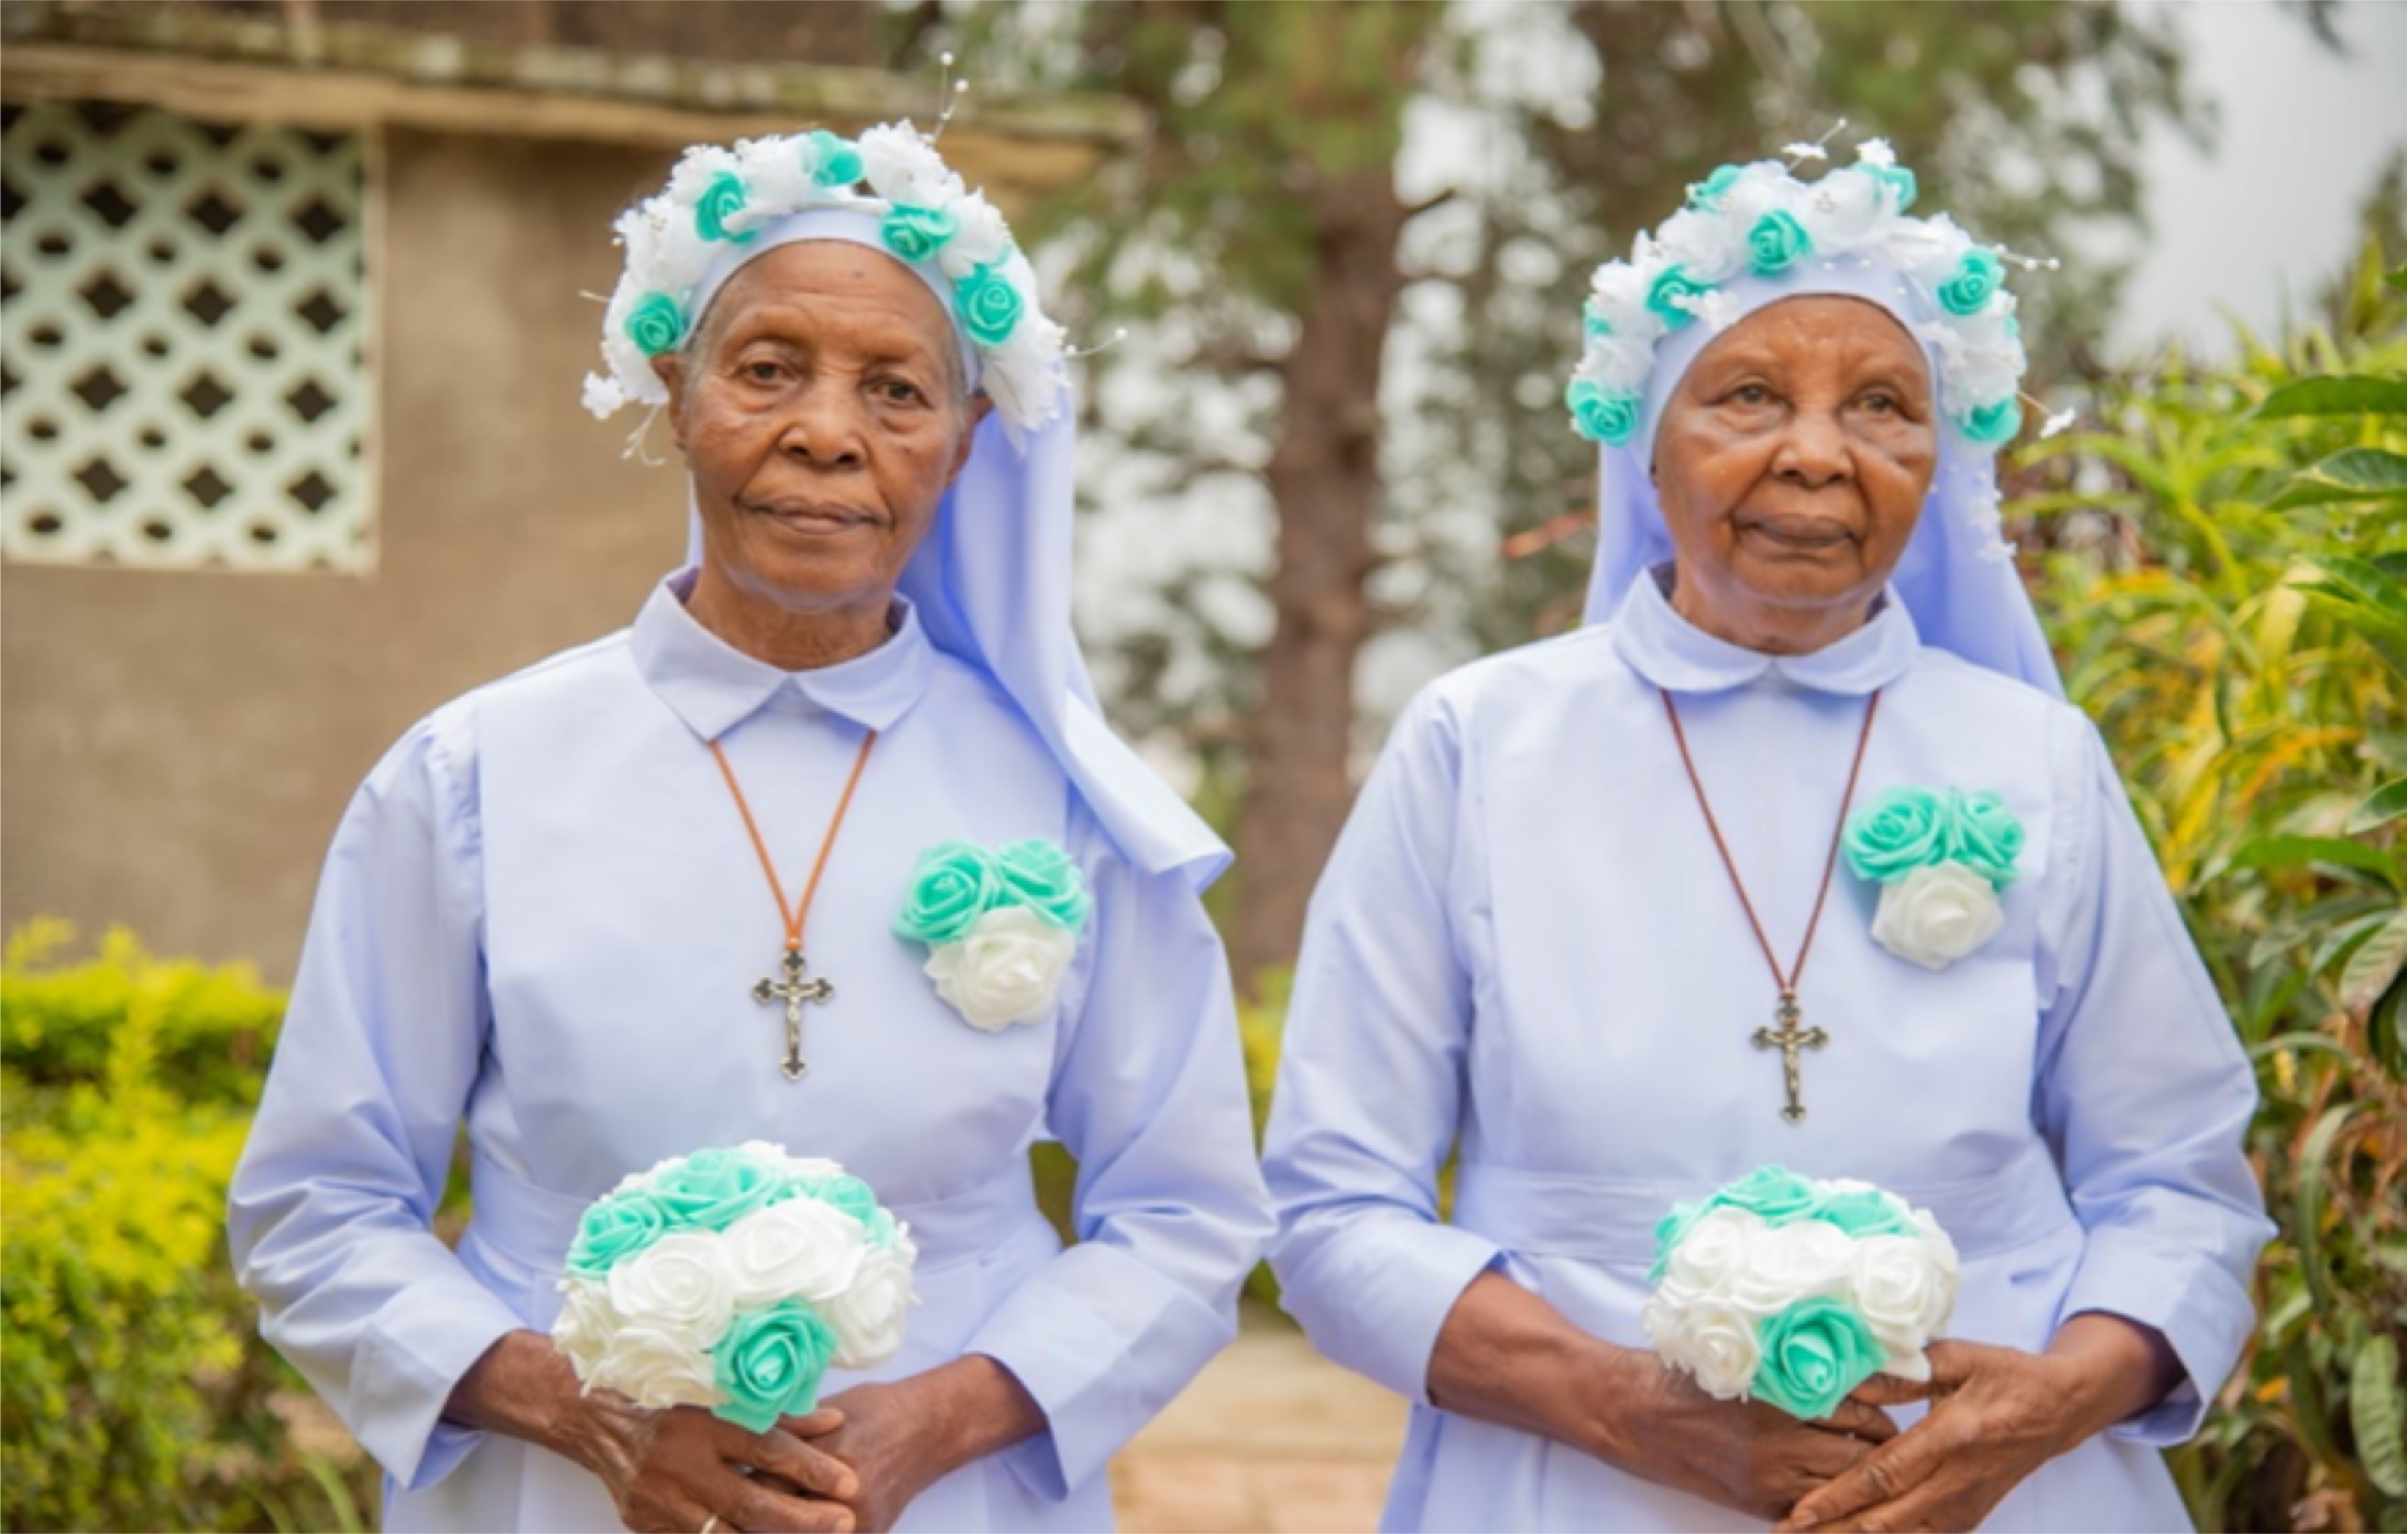 Sisters celebrating 65 years of Sisterhood